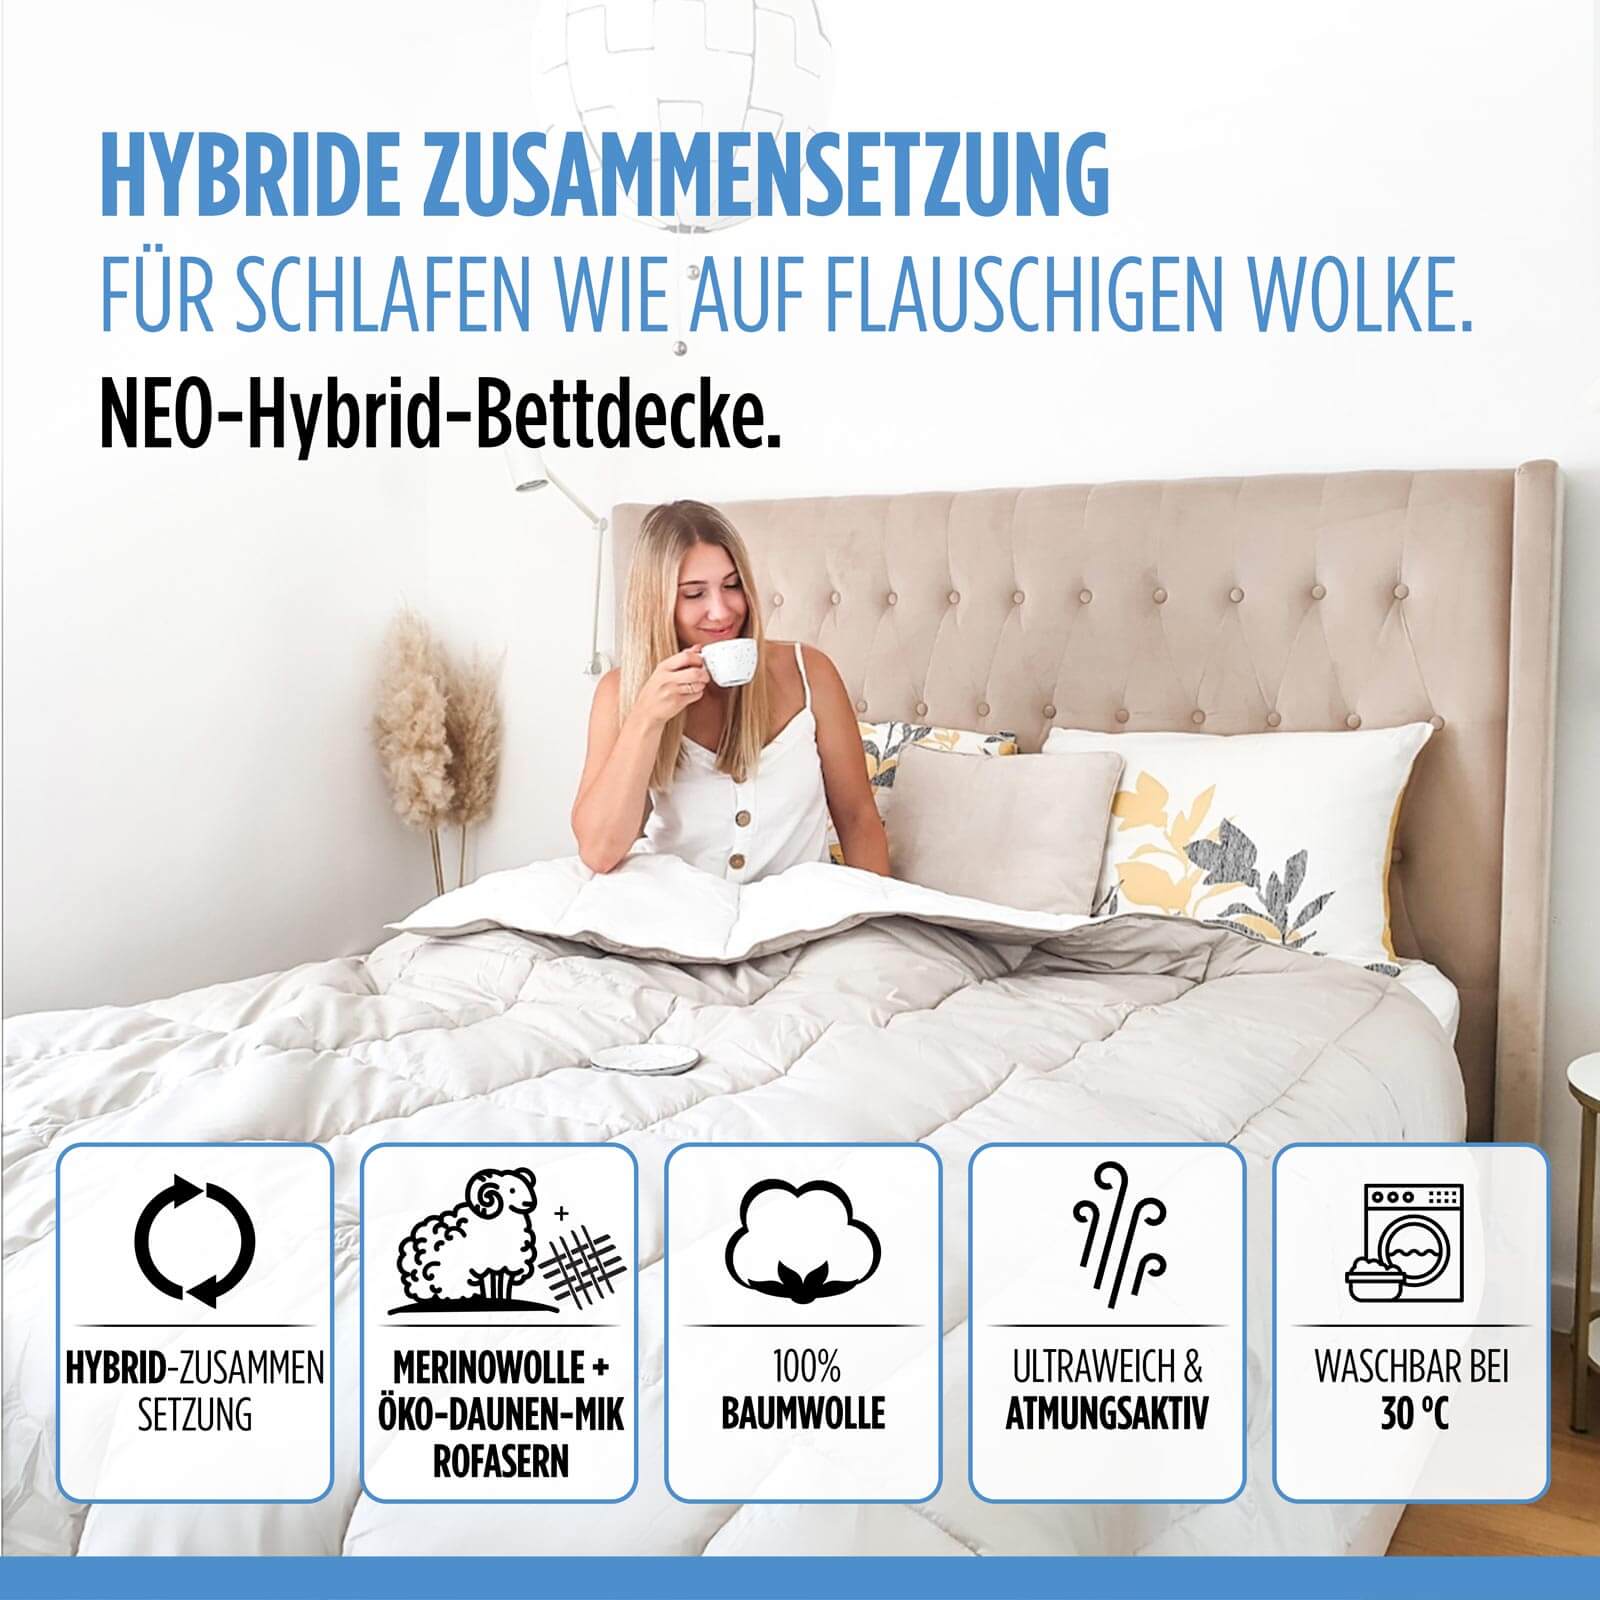 Hybrid 4-Jahreszeiten Bettdecke NEO